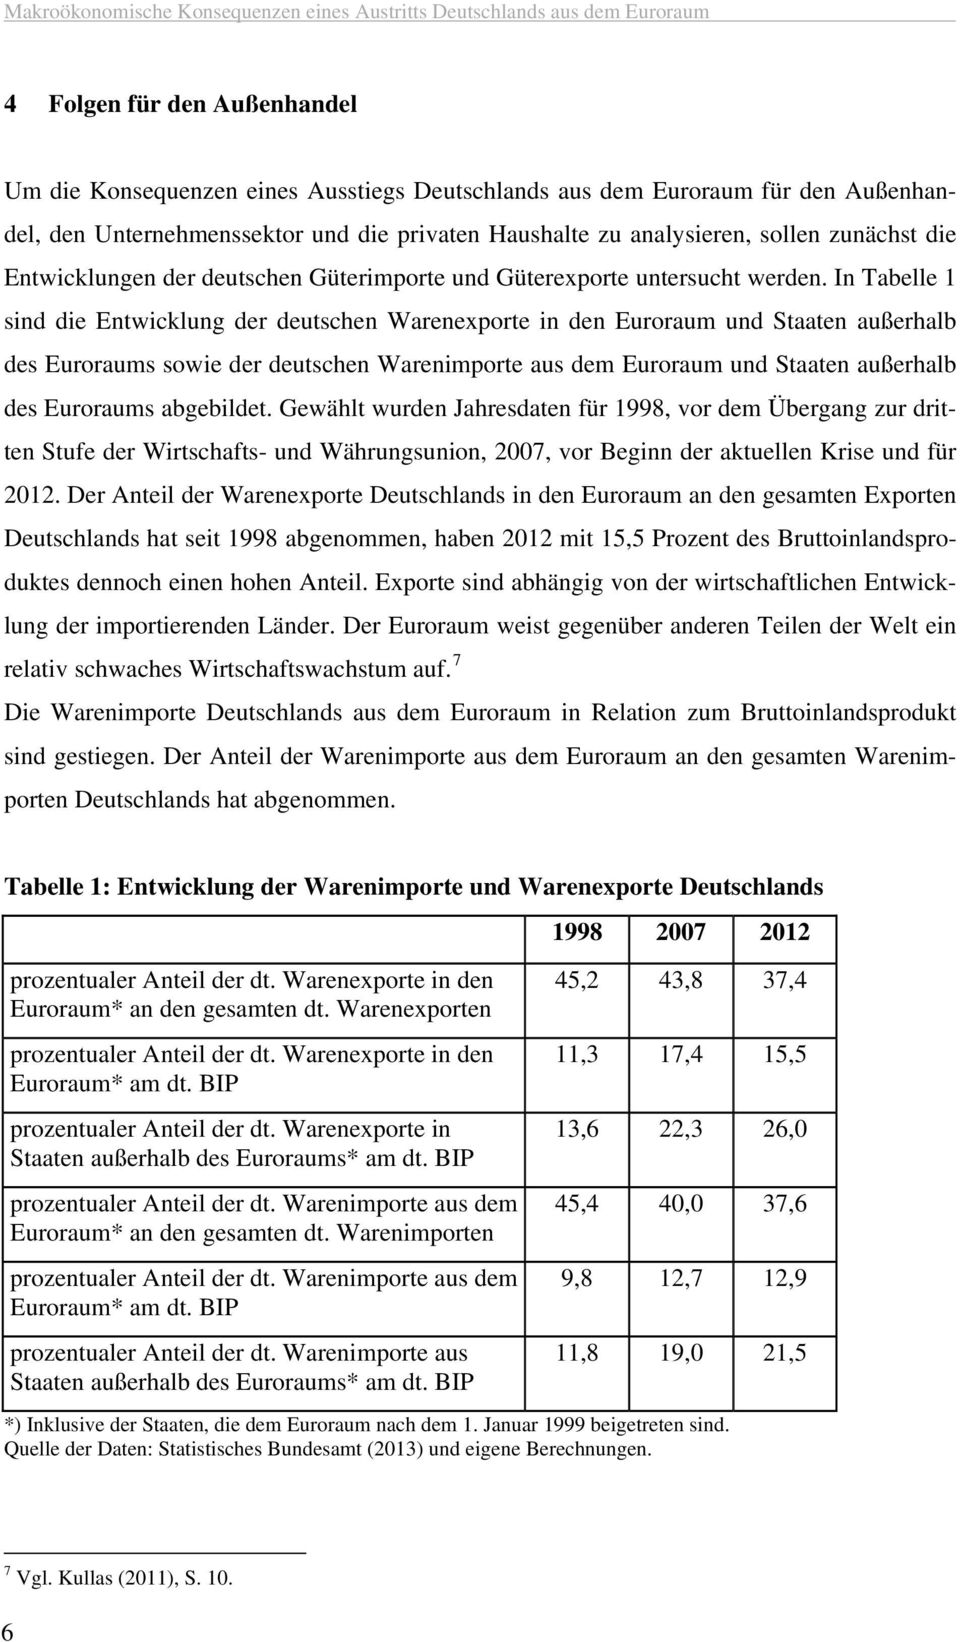 In Tabelle 1 sind die Entwicklung der deutschen Warenexporte in den Euroraum und Staaten außerhalb des Euroraums sowie der deutschen Warenimporte aus dem Euroraum und Staaten außerhalb des Euroraums